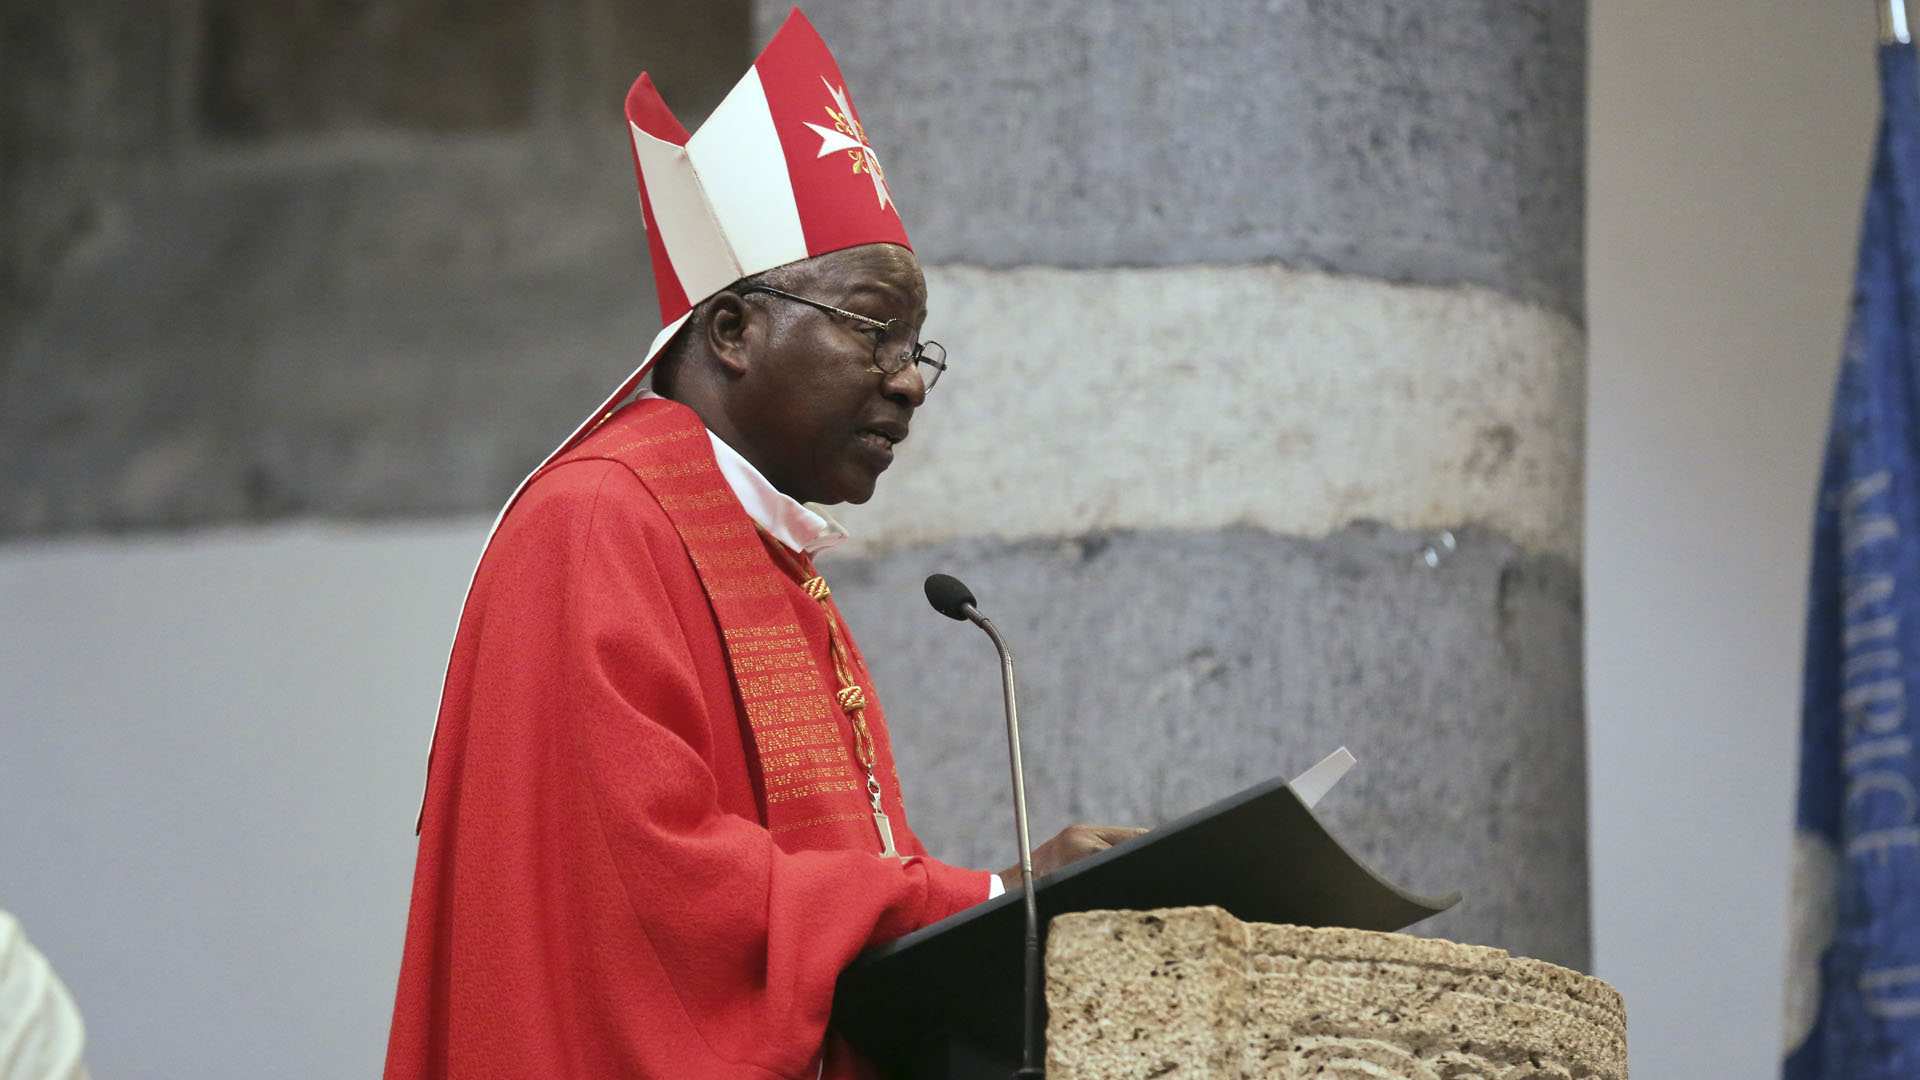 L'archevêque de Ouagadougou, Mgr Philippe Ouédraogo, a mis en place un bureau ecclésiastique pour recueillir les plaintes en cas d'abus sexuel au sein de l'Eglise | © B. Hallet